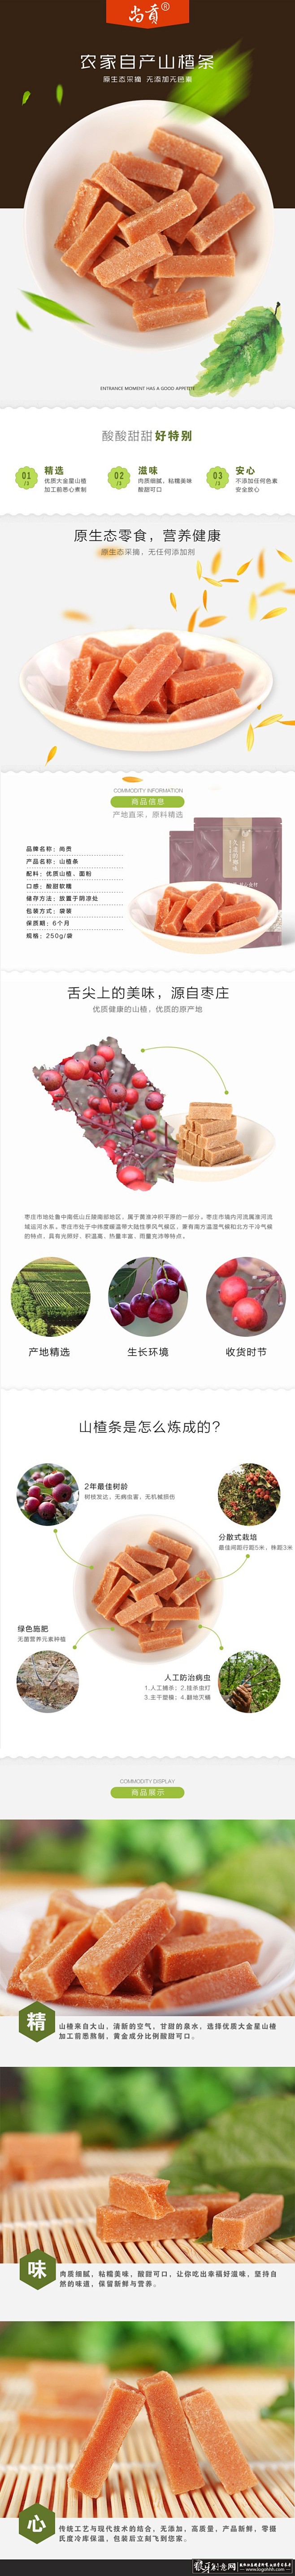 淘宝/电商 山楂食品详情页PSD 美食详...